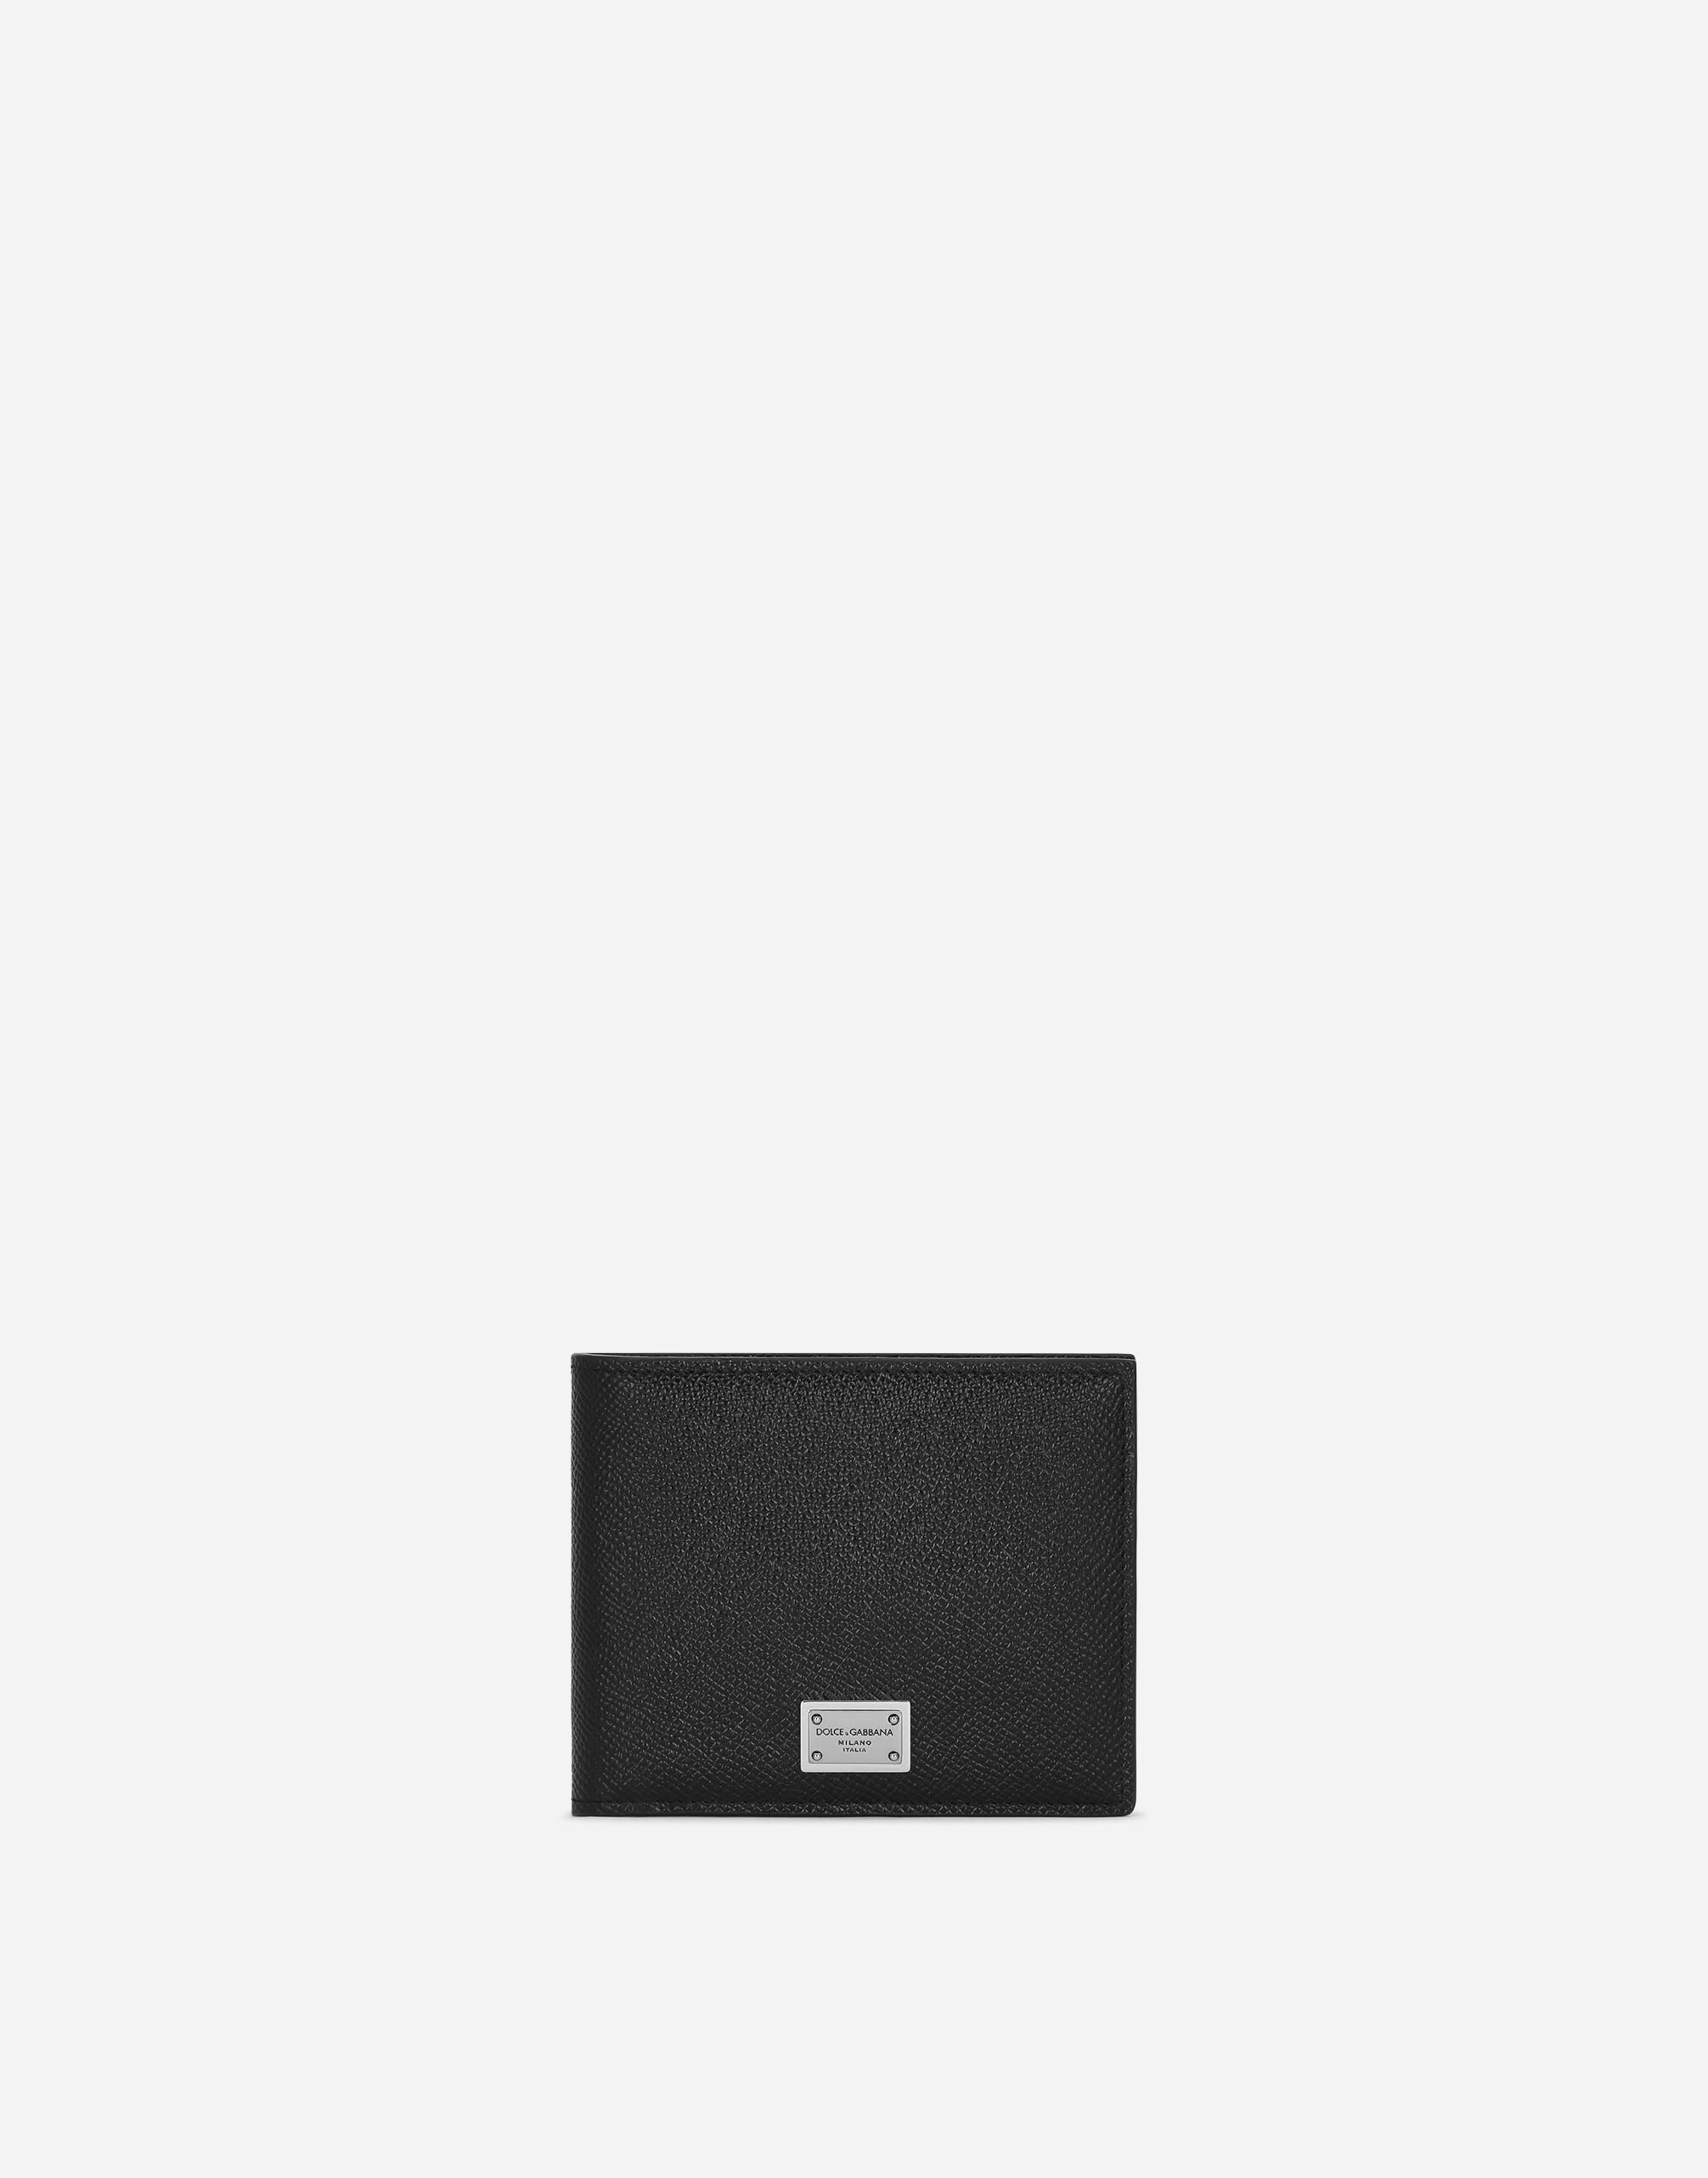 Dolce & Gabbana Calfskin wallet with coin pocket and logo tag Black BP0330AT489